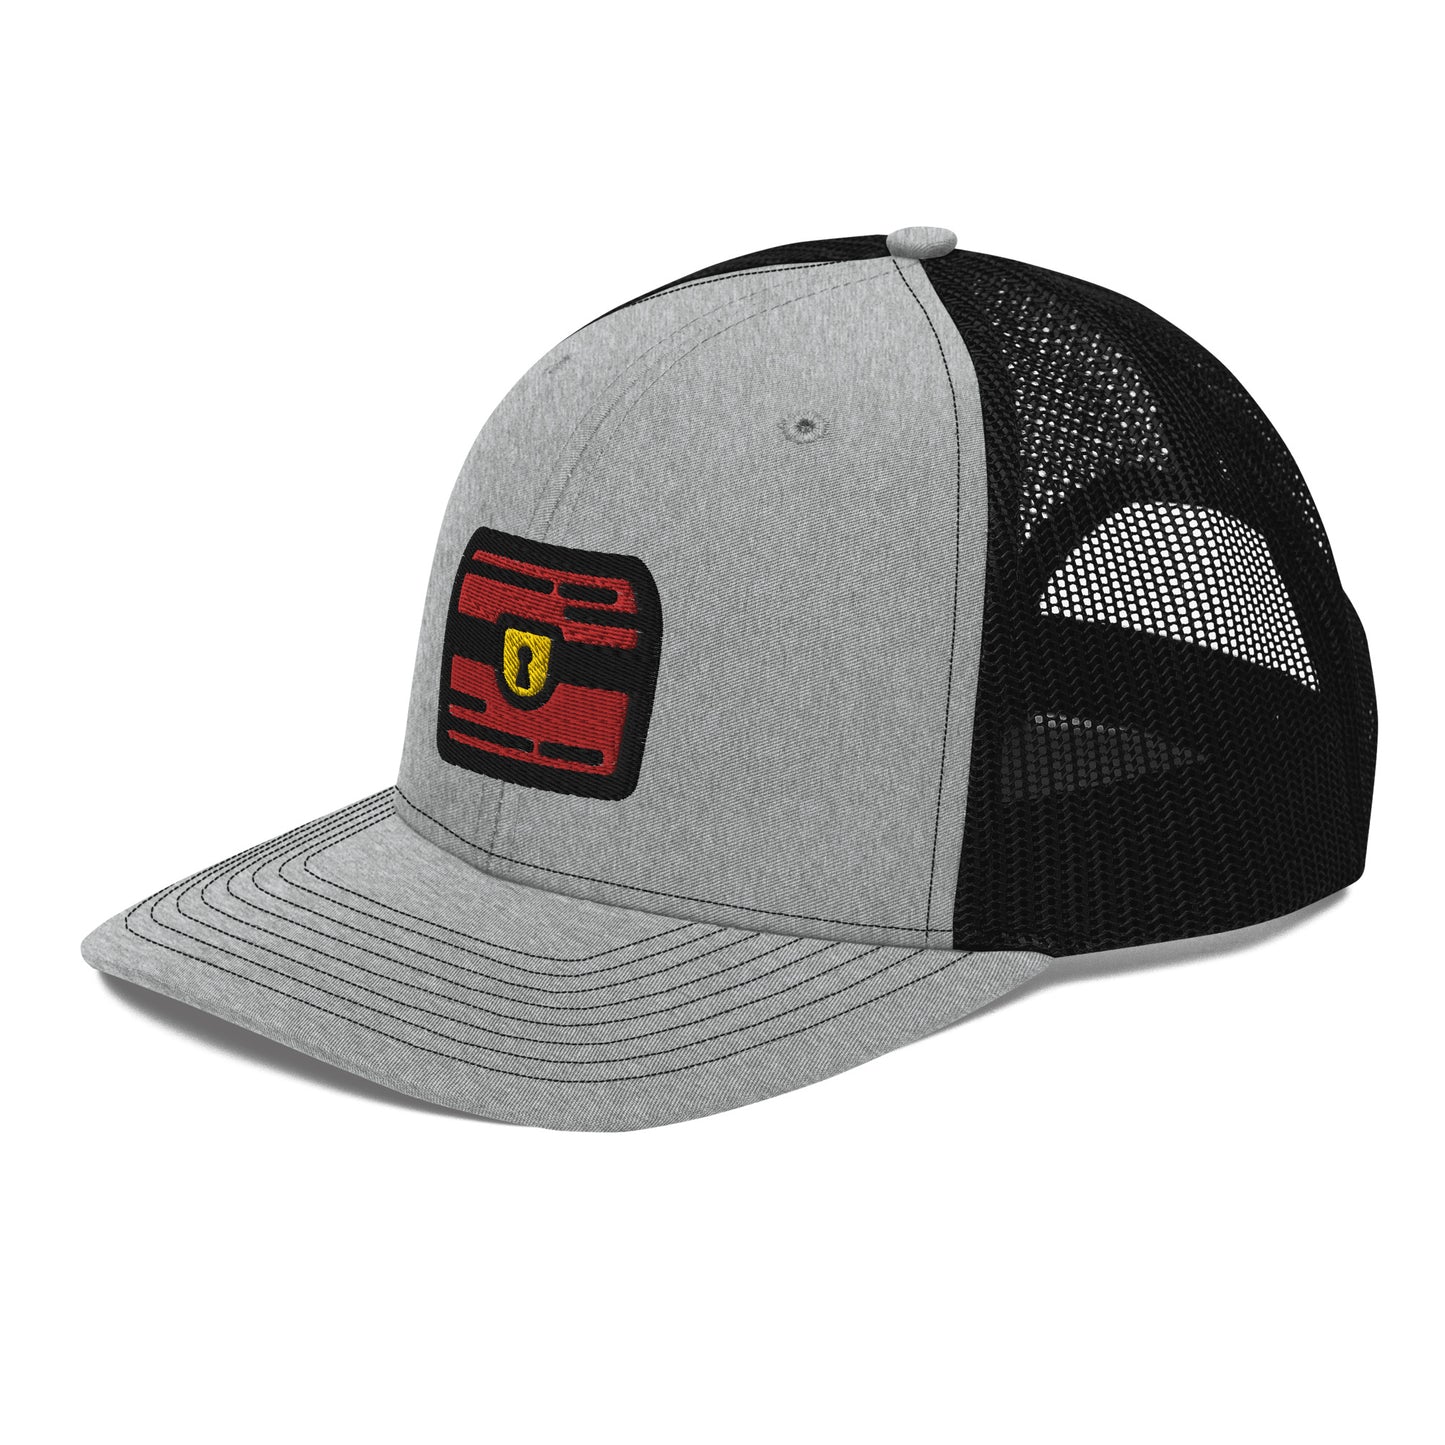 Trucker Hat - Full Color